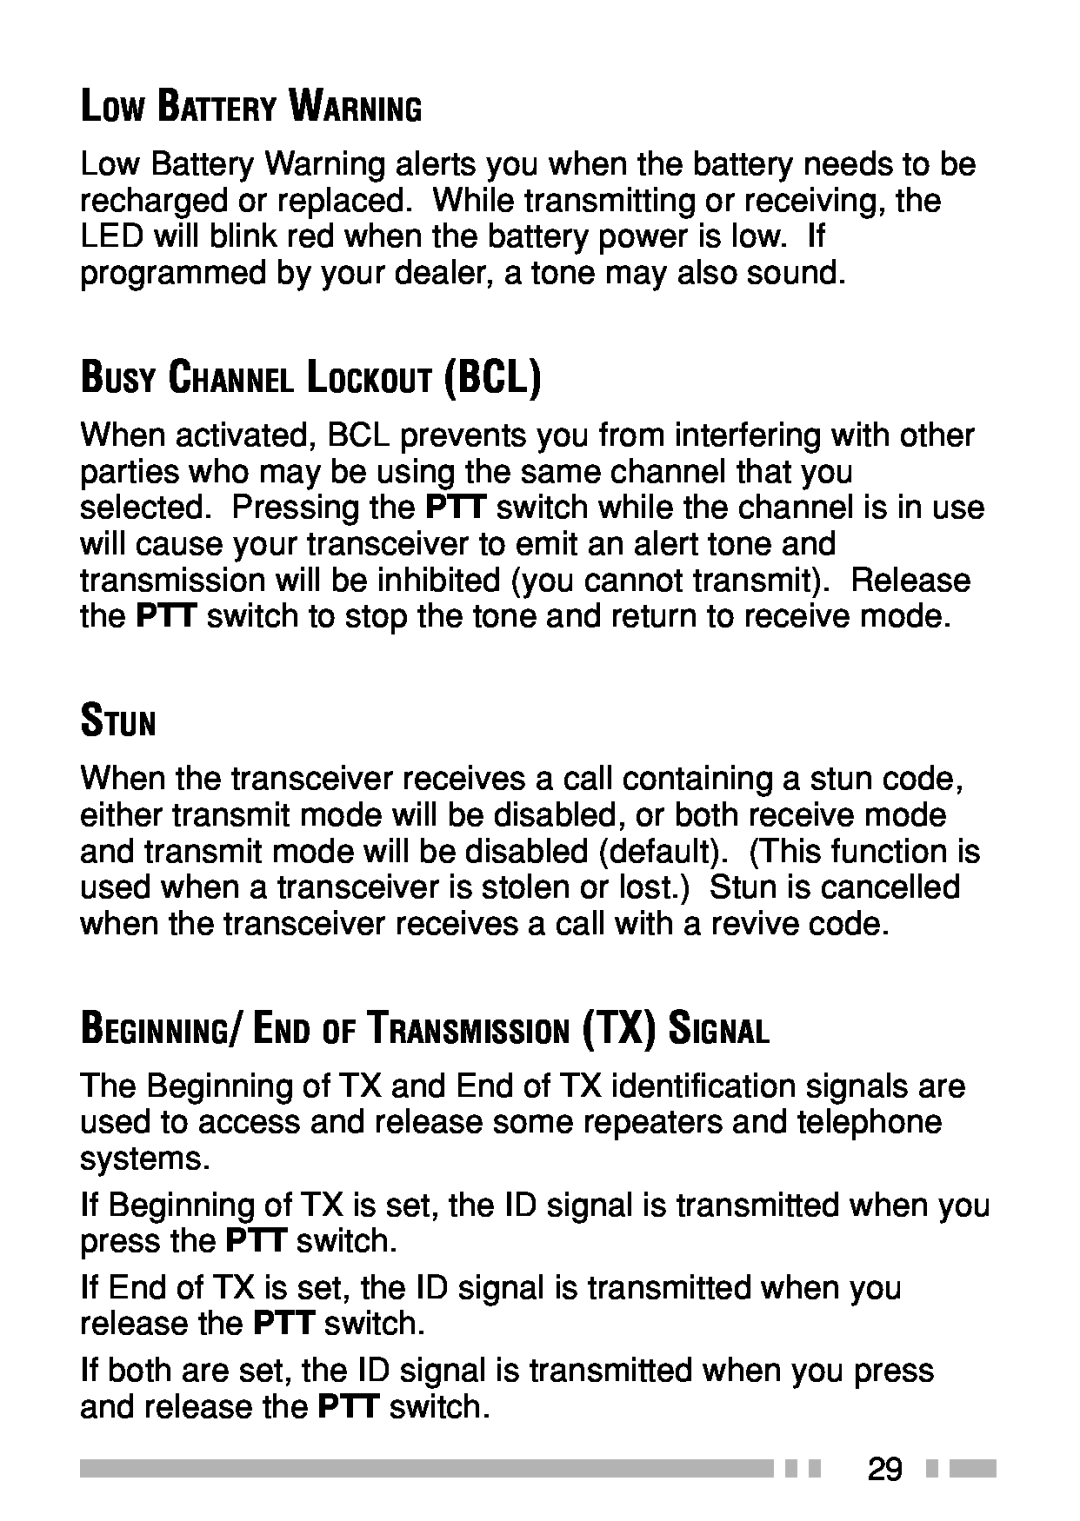 Kenwood TK-3160 instruction manual 